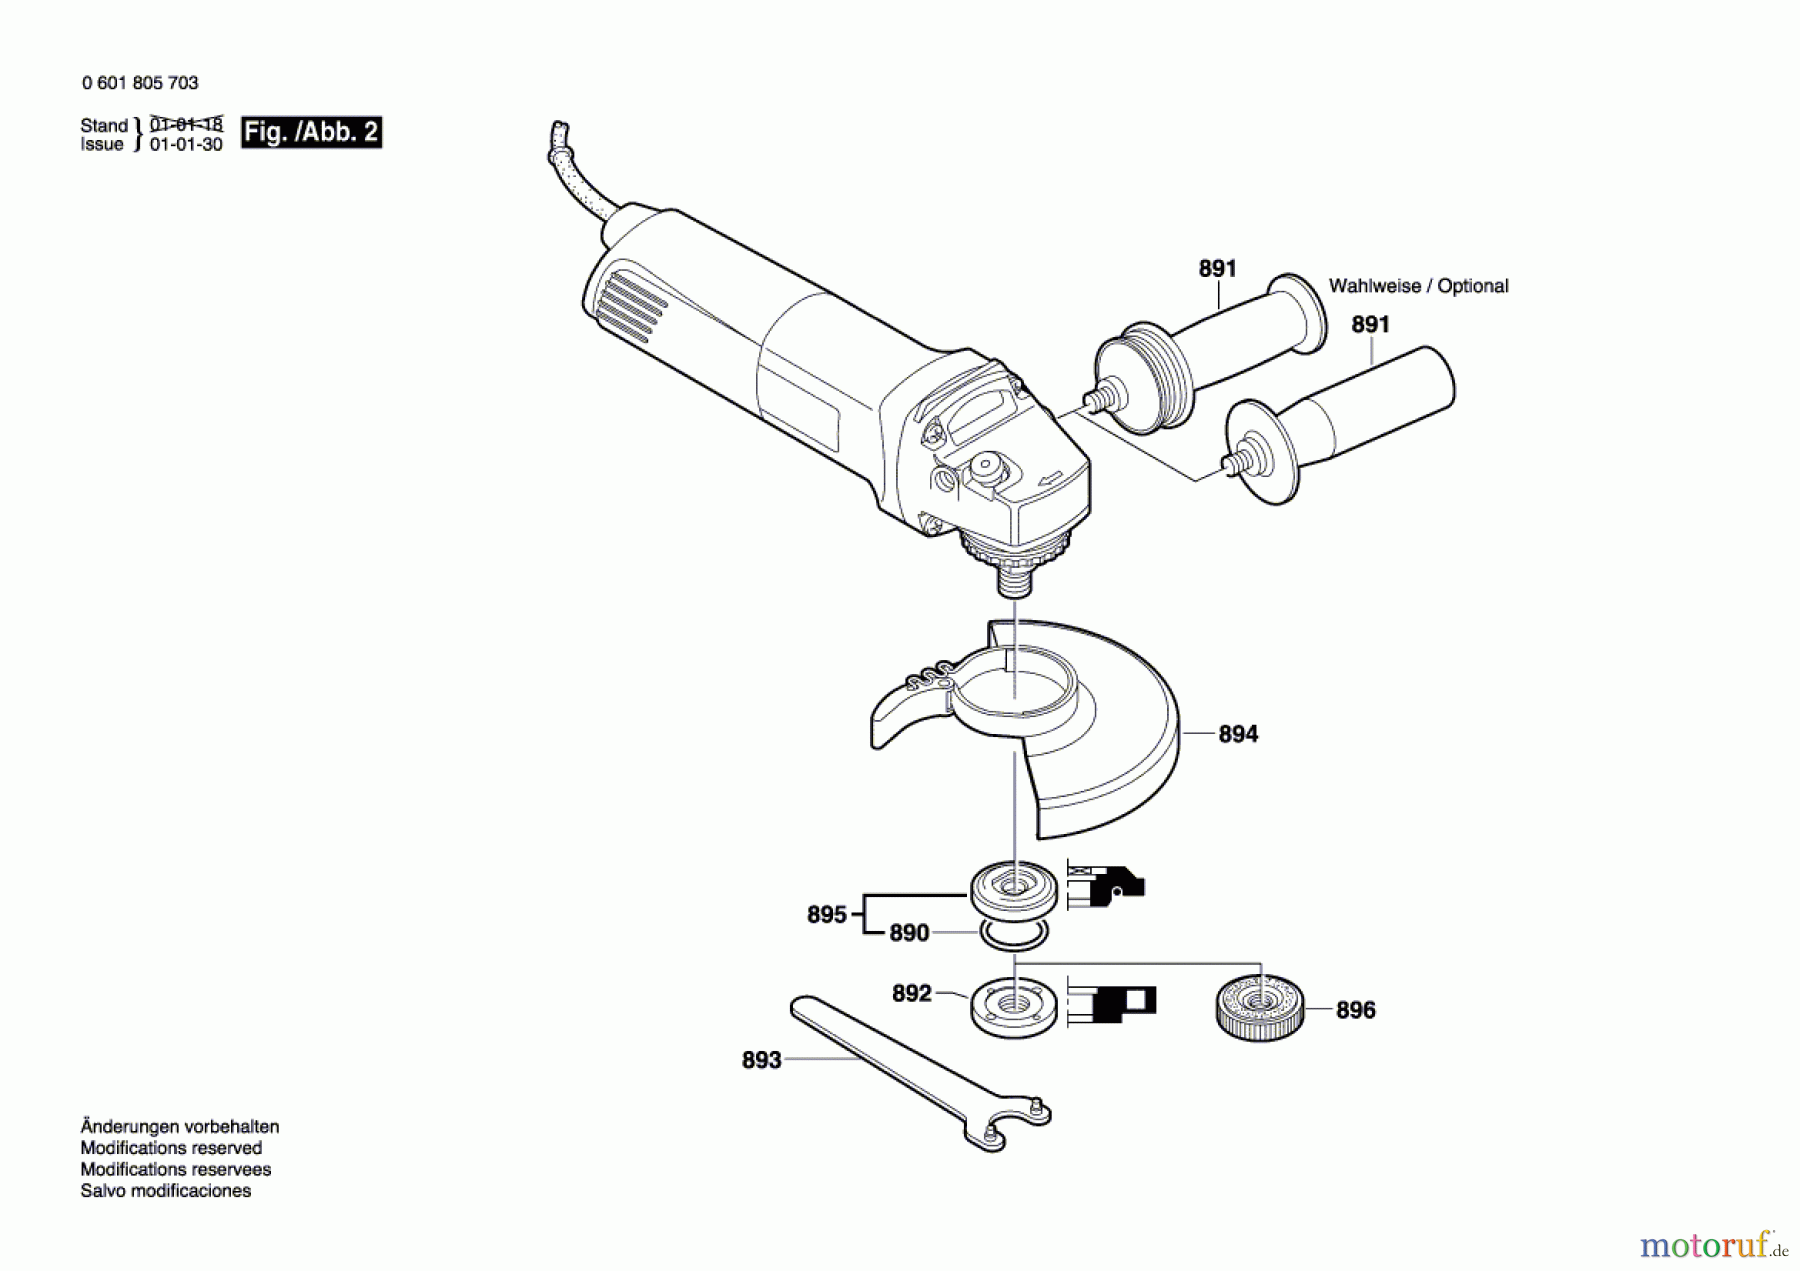  Bosch Werkzeug Winkelschleifer GWS 14-125CE Seite 2